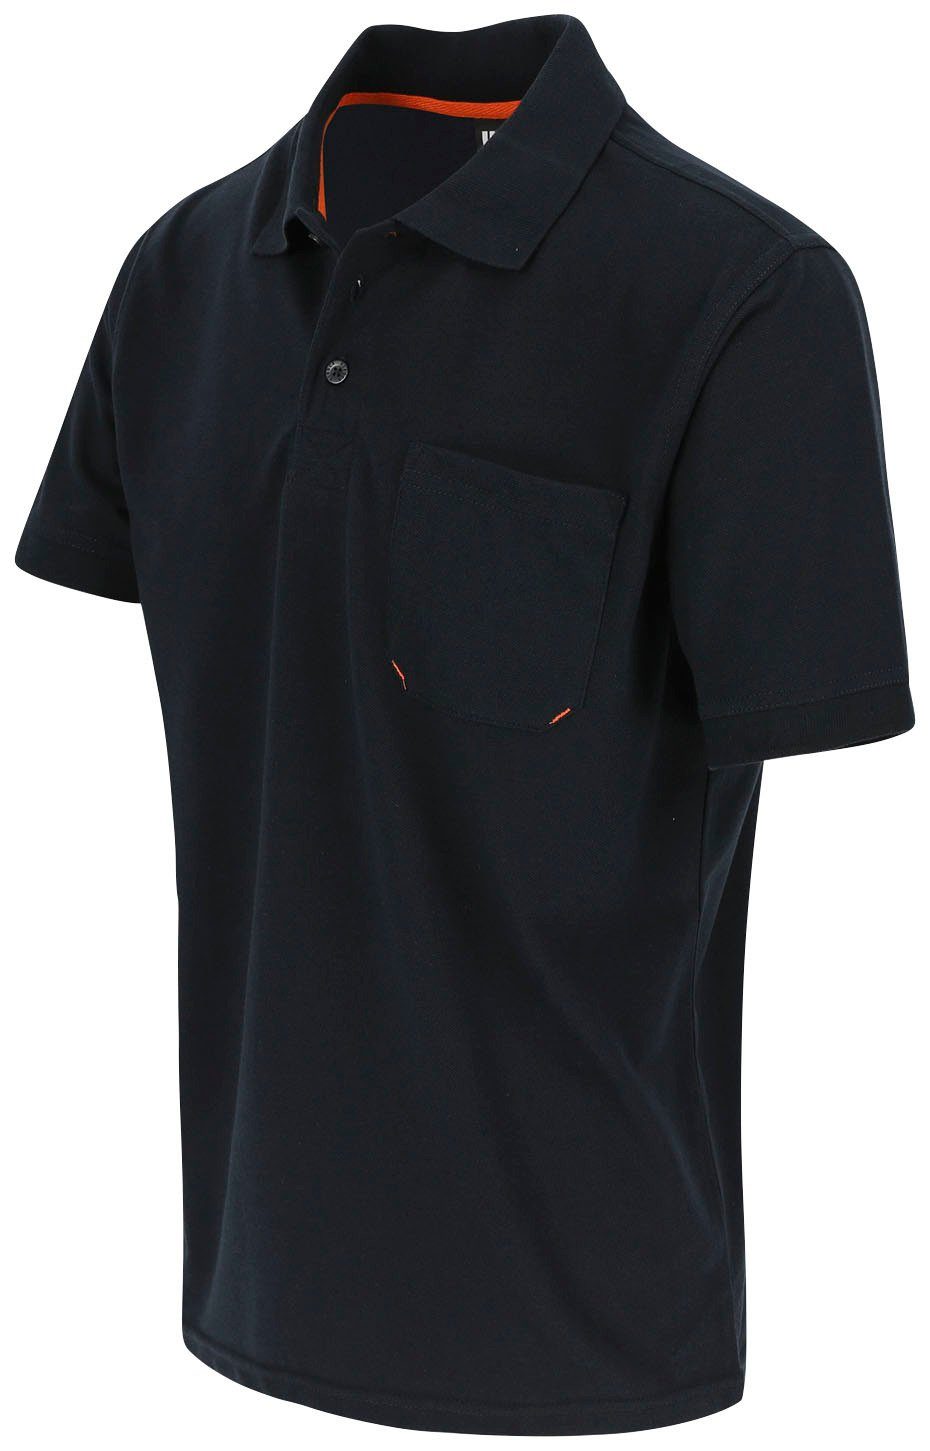 Herock Poloshirt Leo Polohemd und Kurzärmlig Bündchen, verschiedene Brusttasche, 1 marine Rippstrick-Kragen Farben